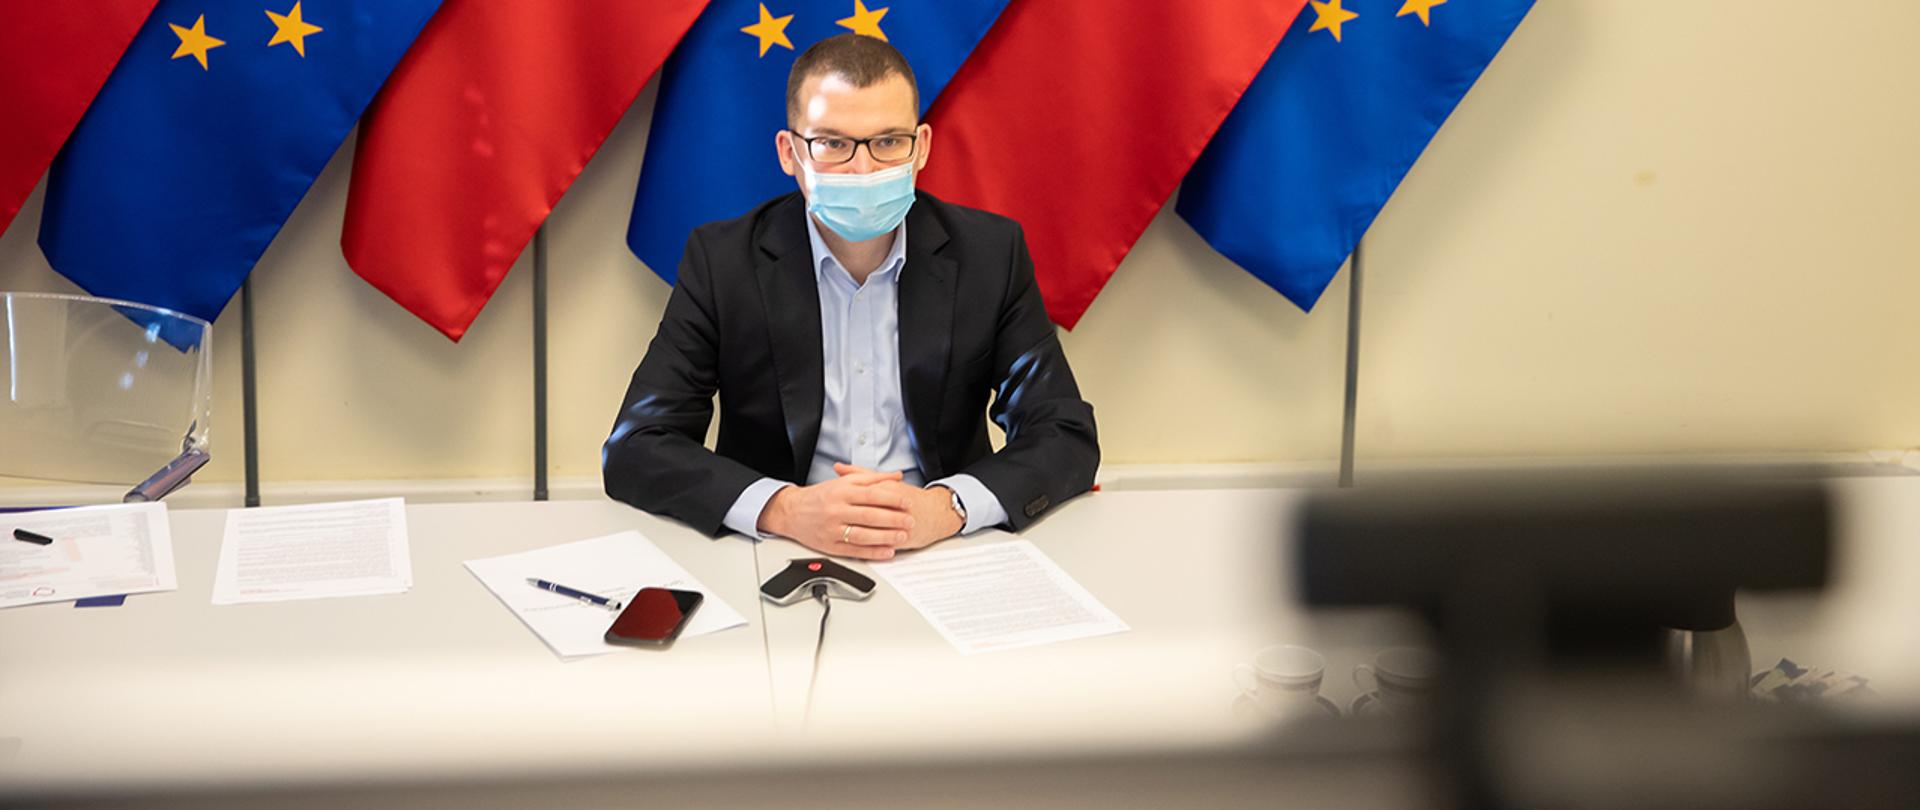 Na zdjęciu widać wiceministra Pawła Szefernakera siedzącego za stołem w maseczce na tle flag Polski i UE. Wiceminister patrzy w ekran.